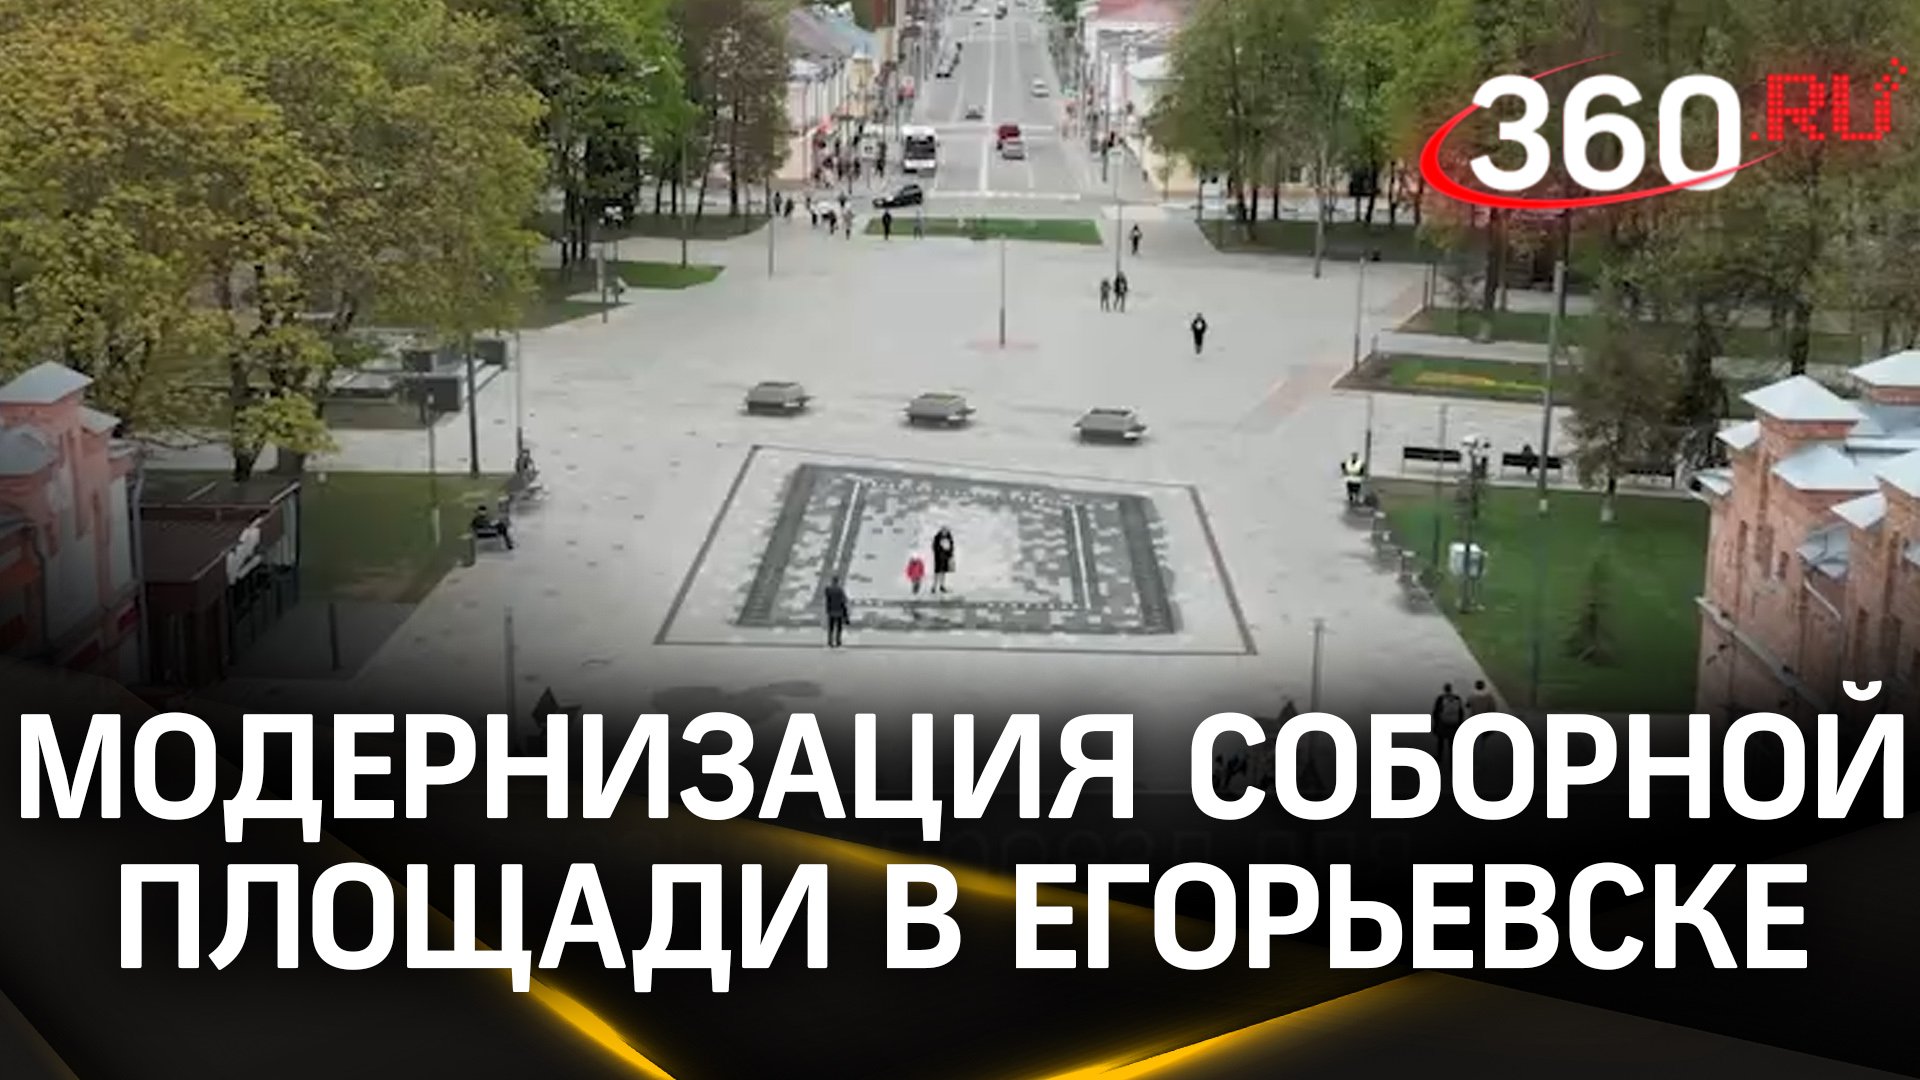 Егорьевскую Соборную площадь модернизировали